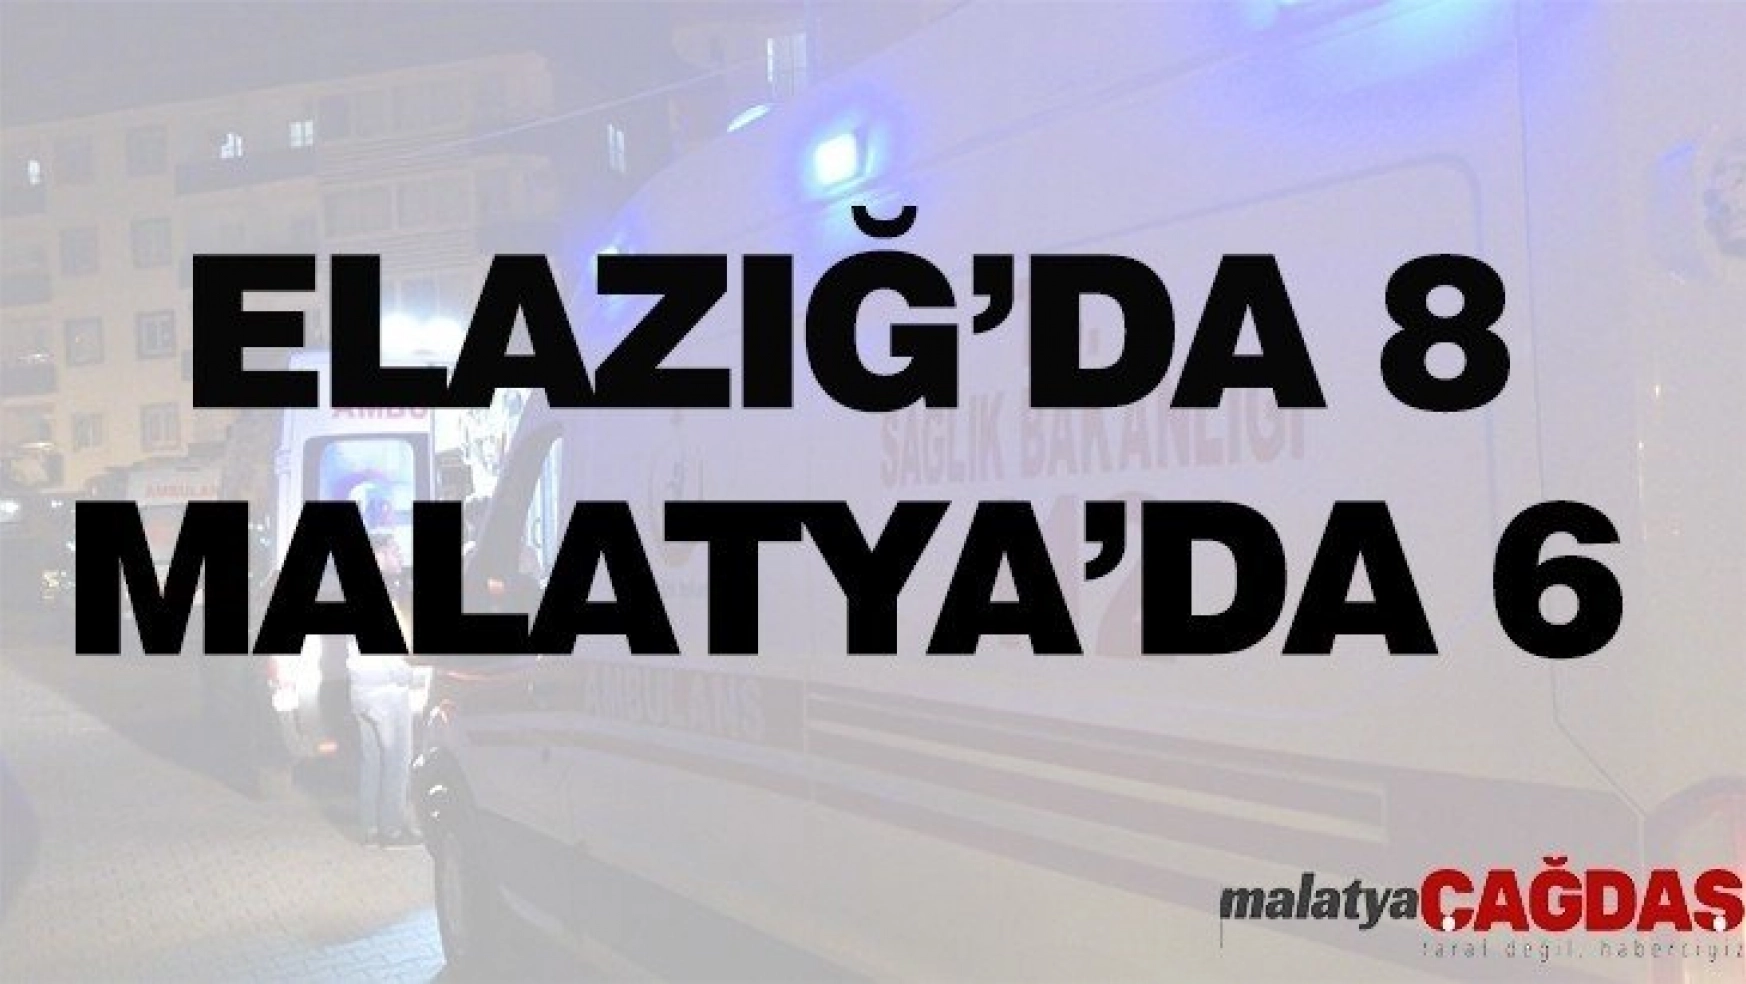 AFAD: Elazığ'da 8, Malatya'da 6 kişi hayatını kaybetti